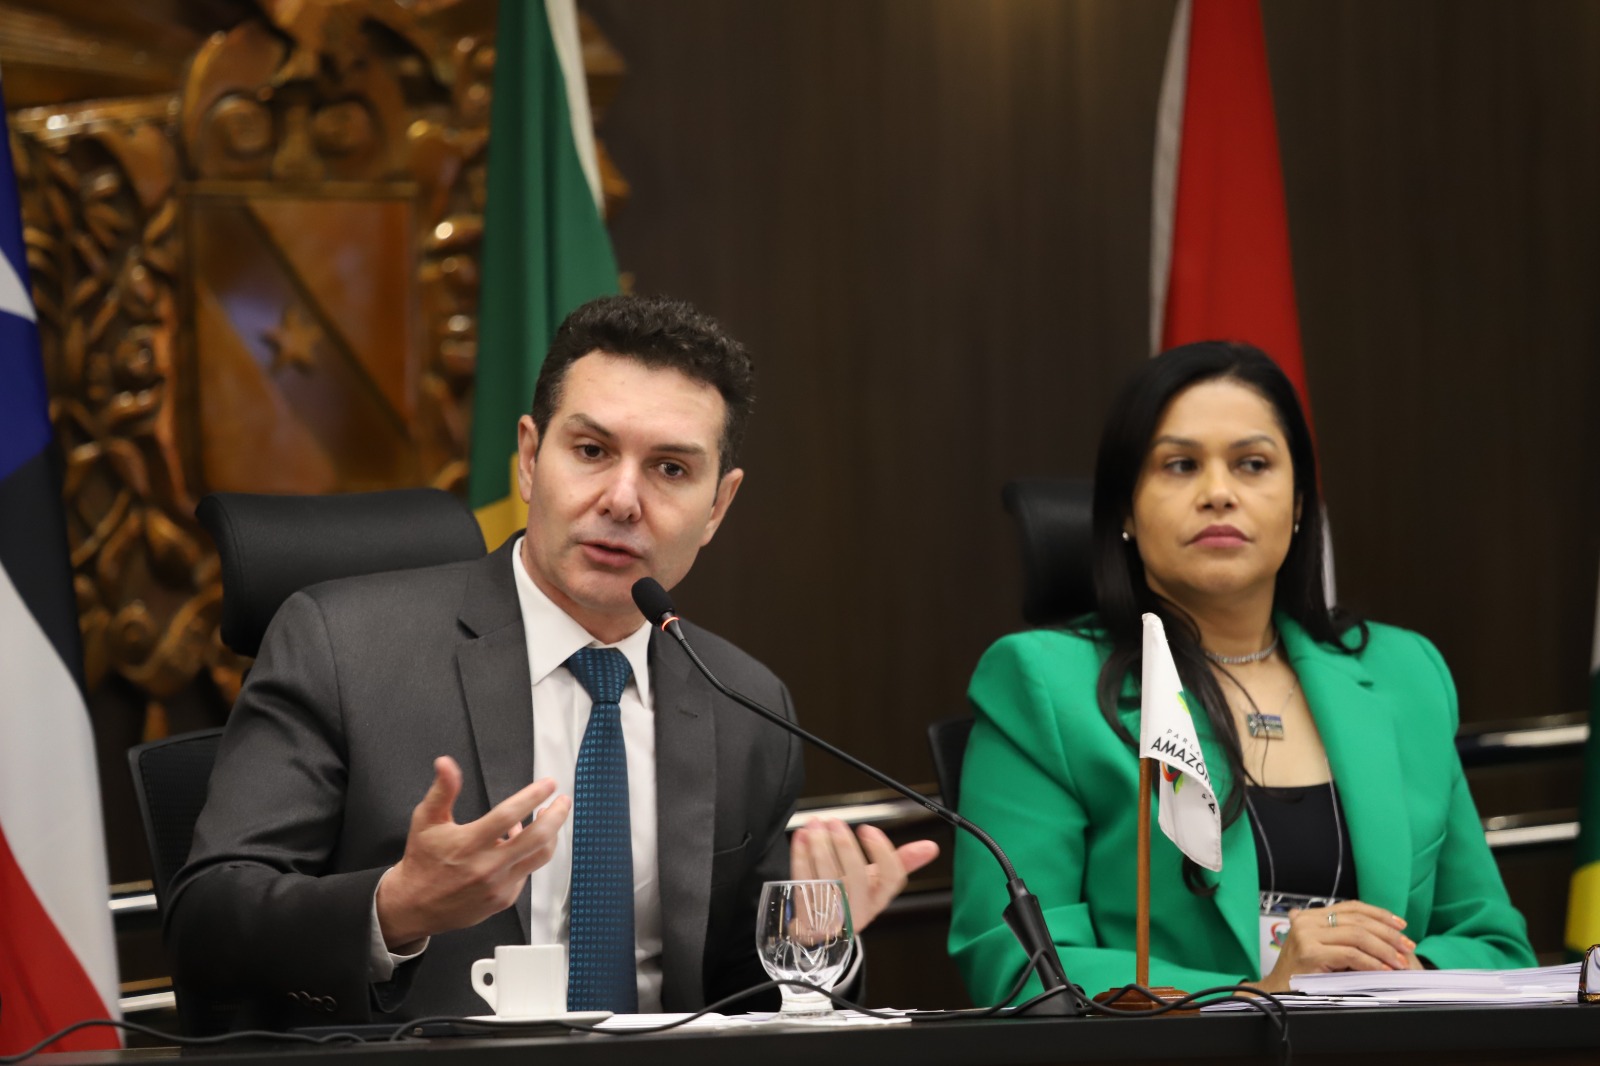 Jader Filho reforçou o compromisso do Governo Federal com as cidades e estados do Brasil